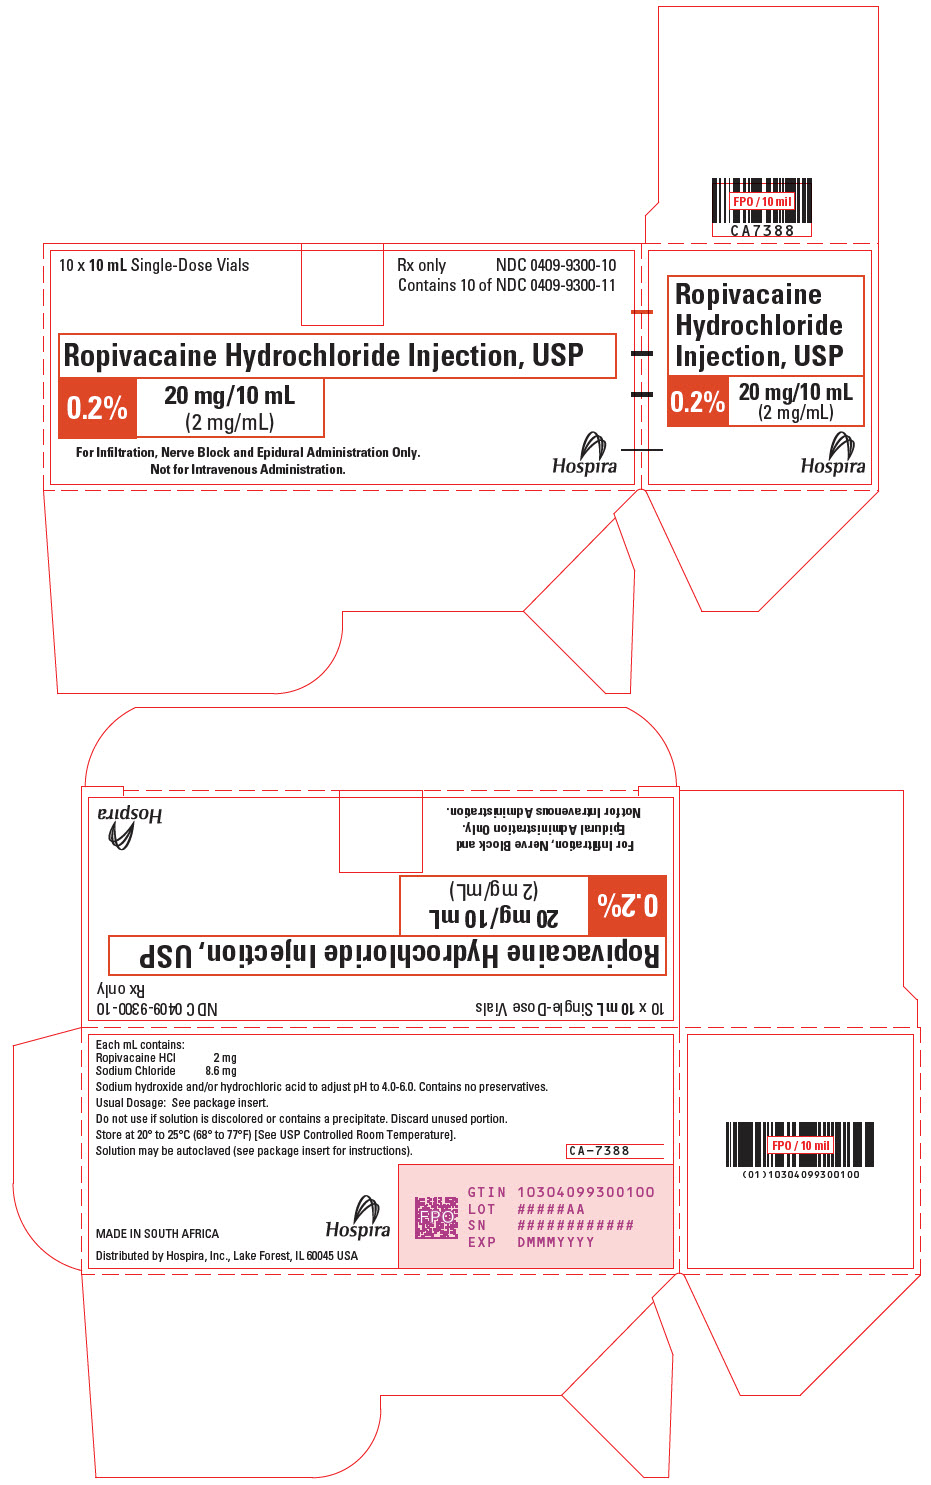 PRINCIPAL DISPLAY PANEL - 20 mg/10 mL Vial Carton